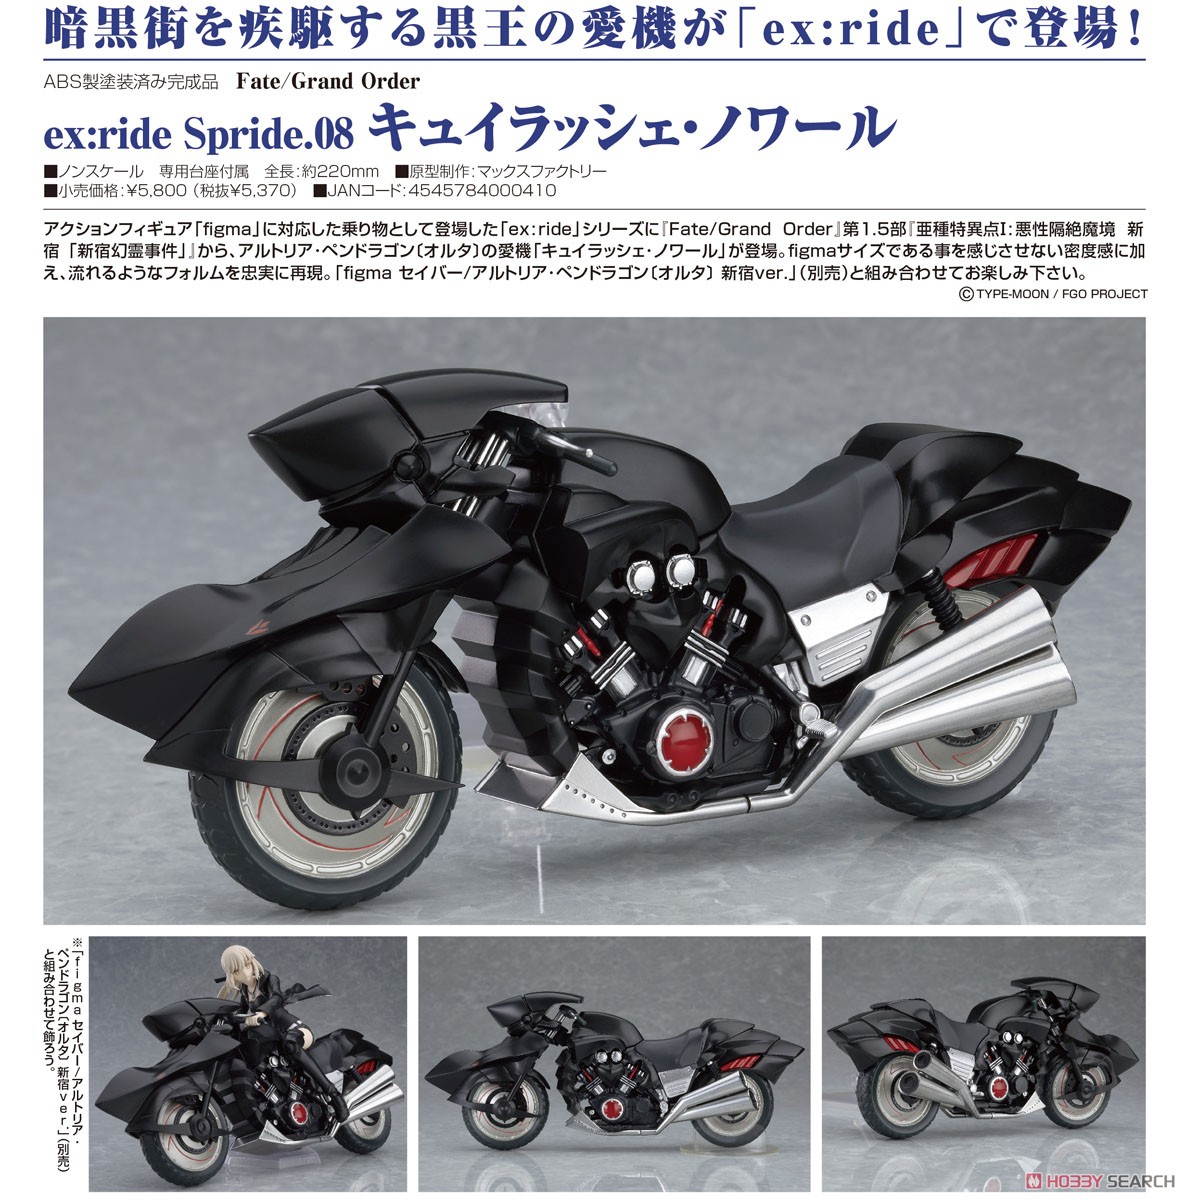 ex:ride Spride.08 キュイラッシェ・ノワール (フィギュア) 商品画像4